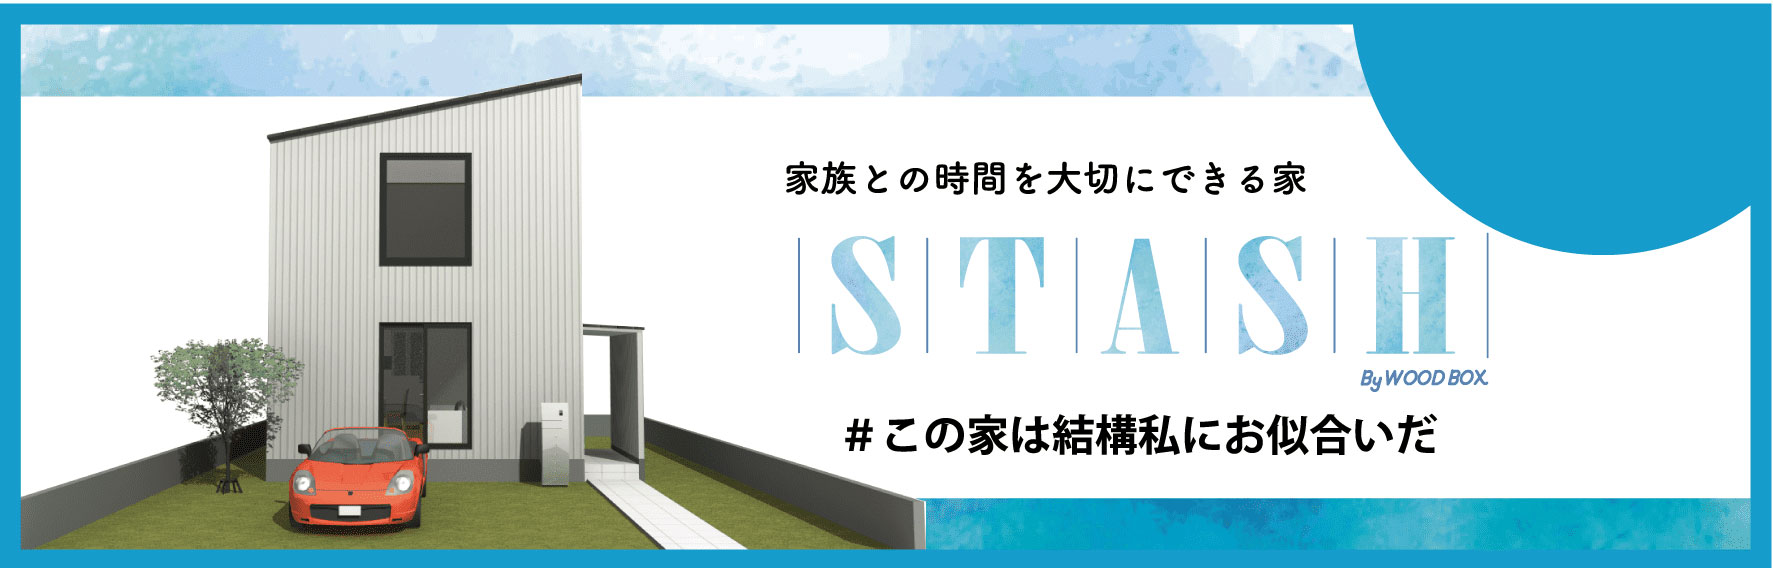 愛知県でリモートワーク用はなれの個室「STASH」